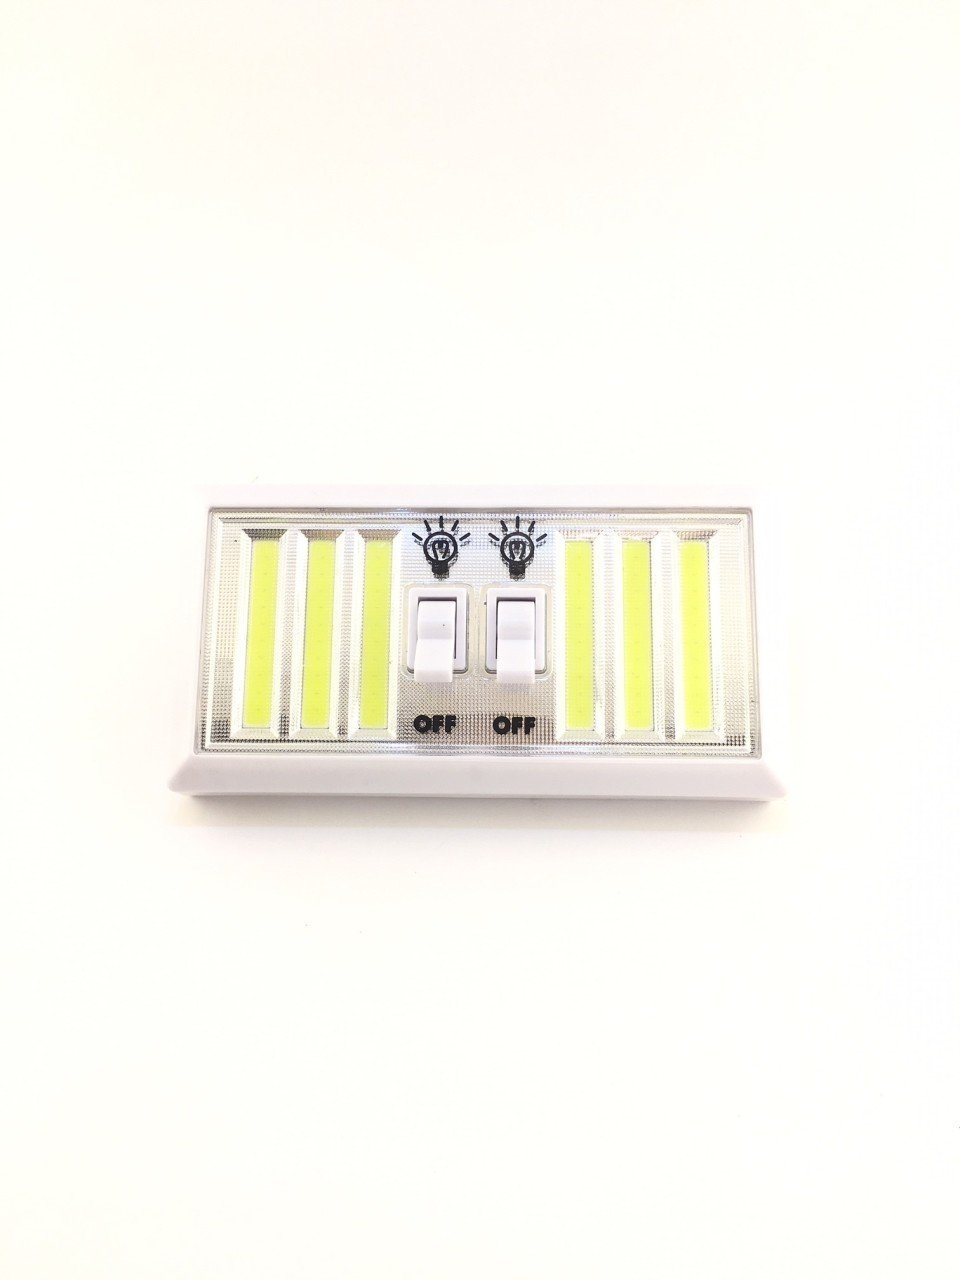 Mıknatıslı Yapışkanlı Pilli Kablosuz Anahtarlı LED Lamba